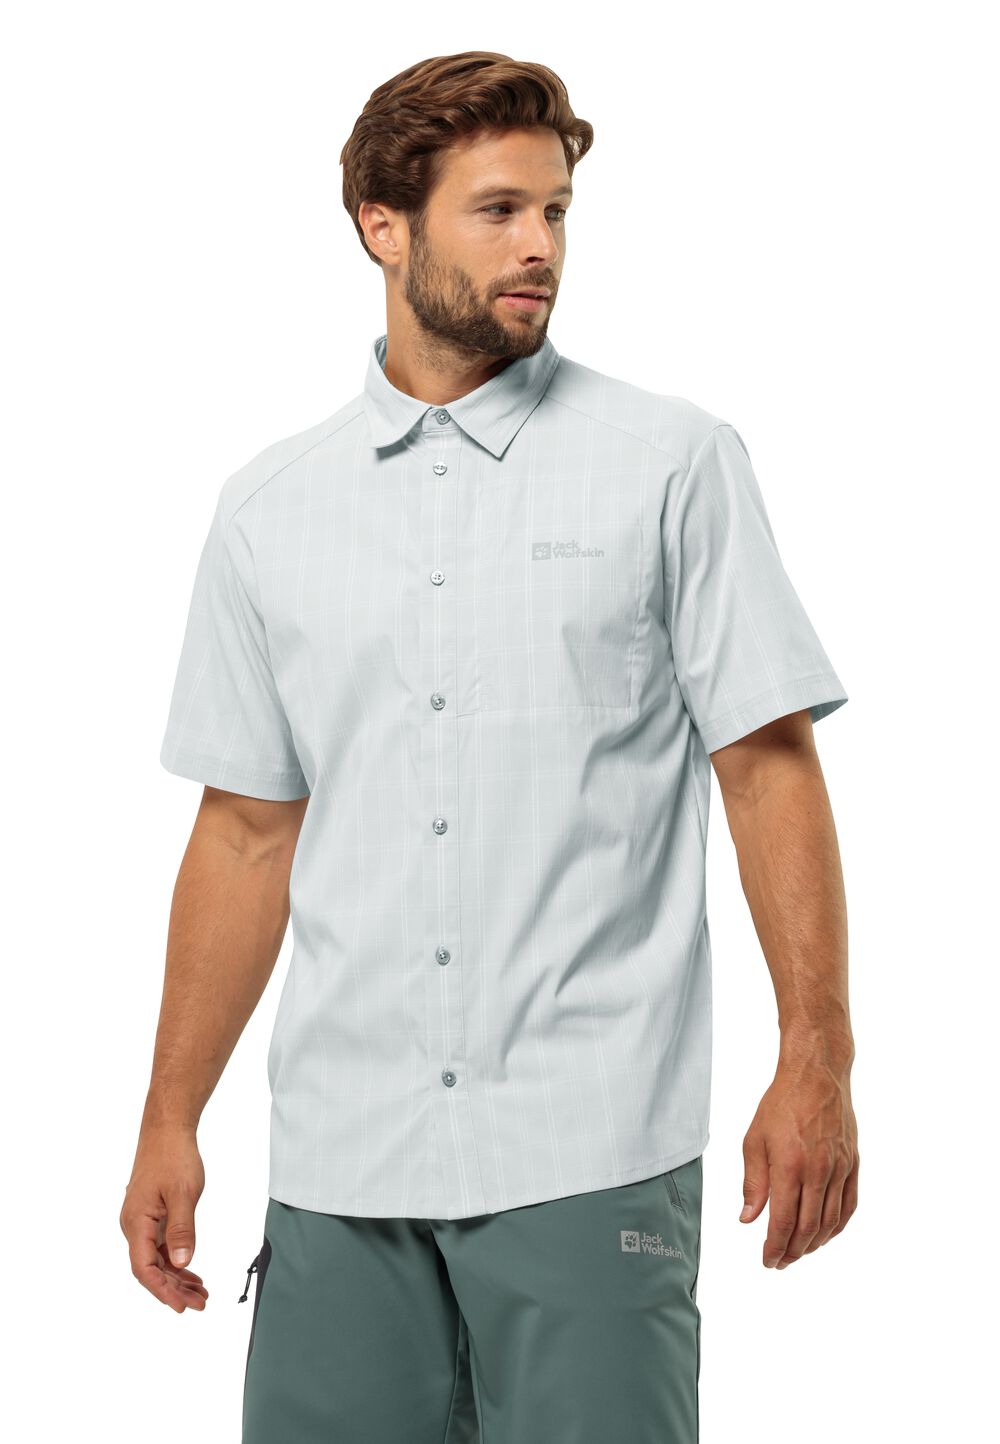 Jack Wolfskin Norbo S S Shirt Men Overhemd met korte mouwen Heren L grijs cool grey check